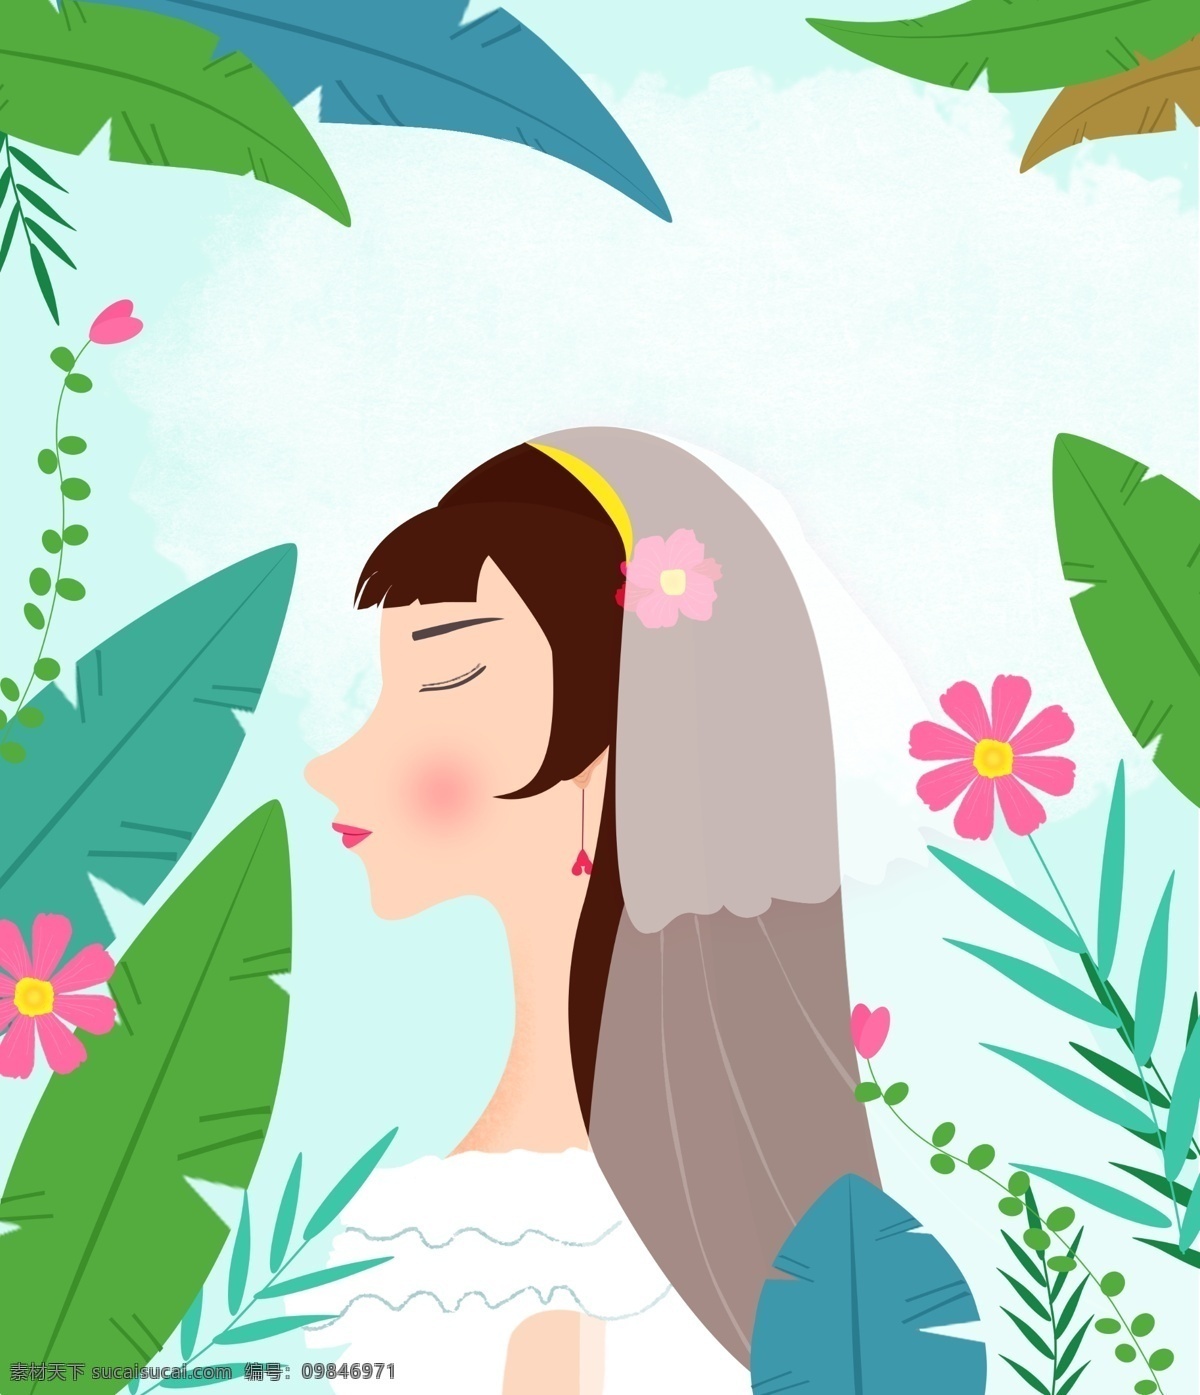 原创 一个 女孩儿 梦 中 婚礼 树叶 花朵 商业插画 唯美 夏天